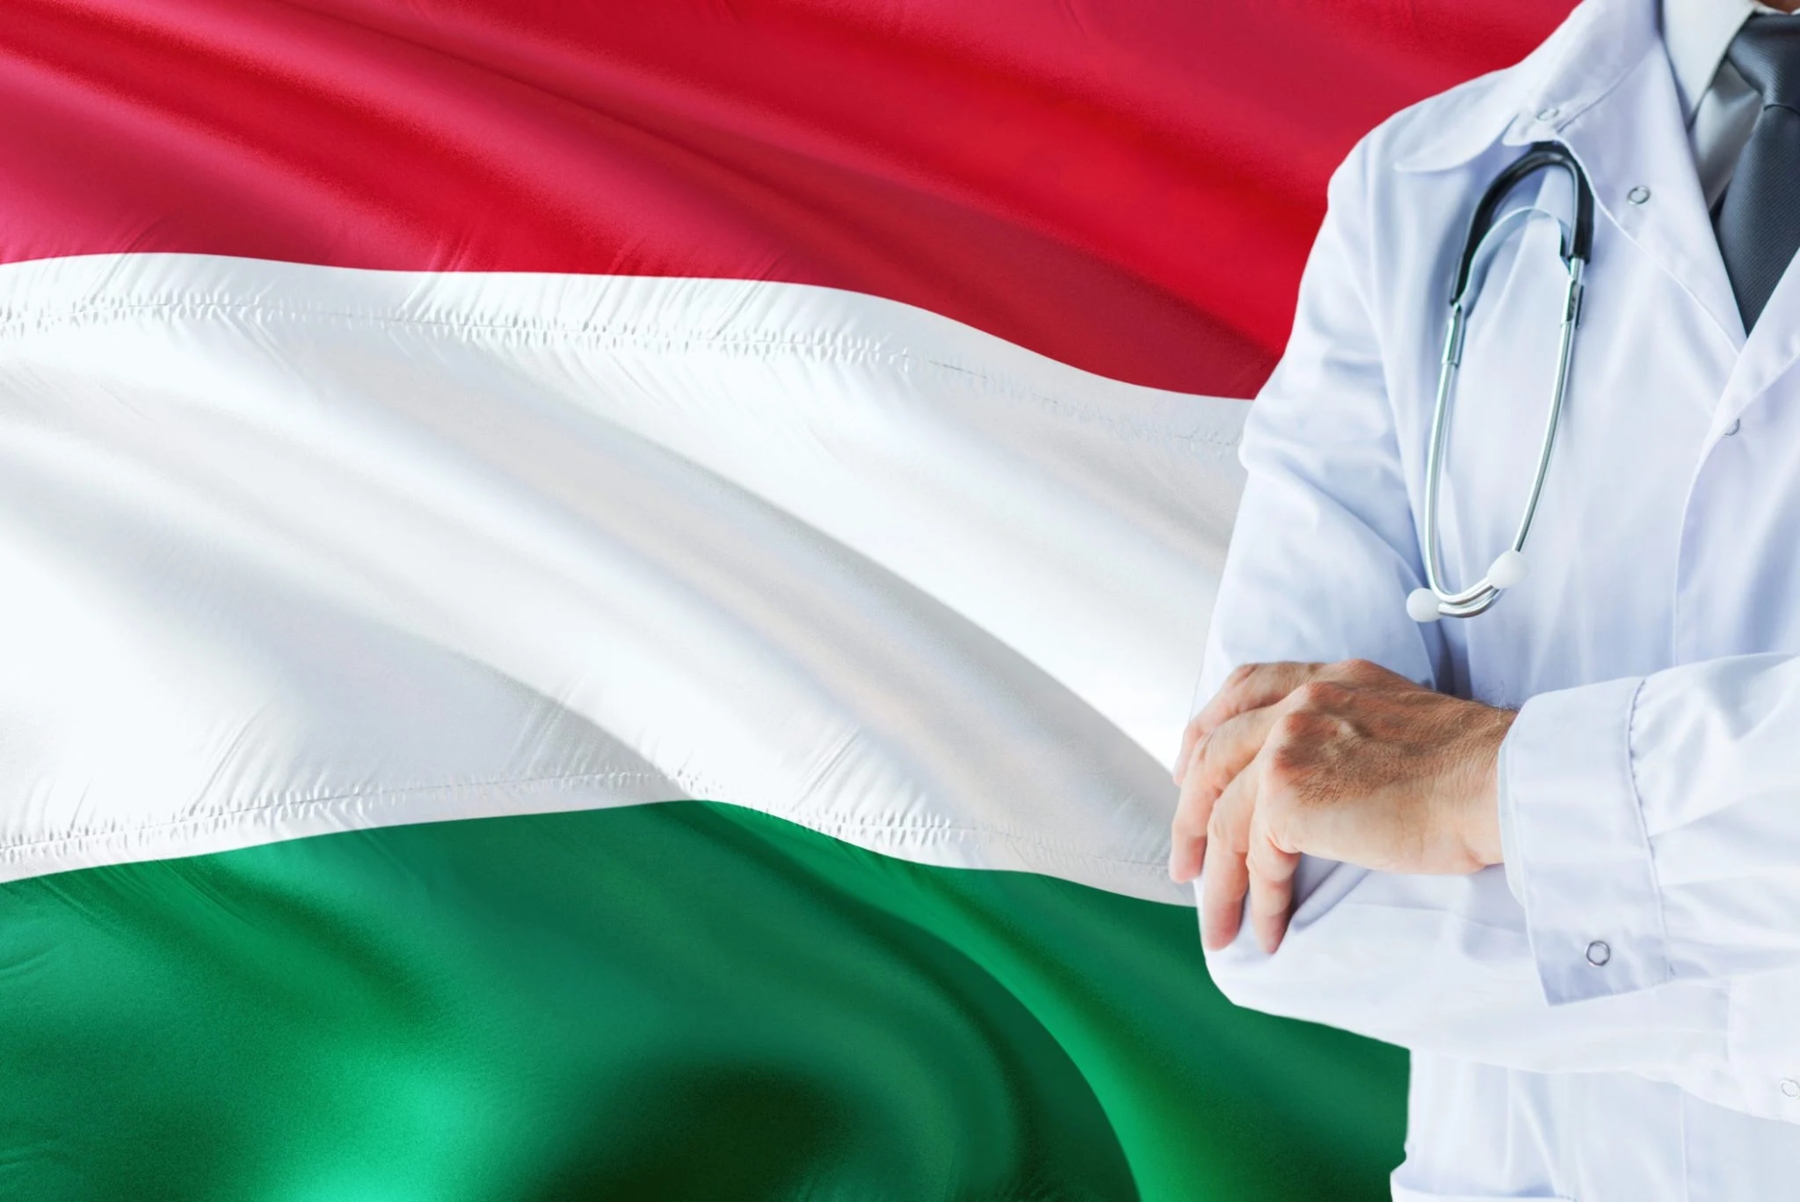 ΠΟΥ: Η Ουγγαρία στοχεύει να επεκτείνει το όραμά της για την υγεία για όλους